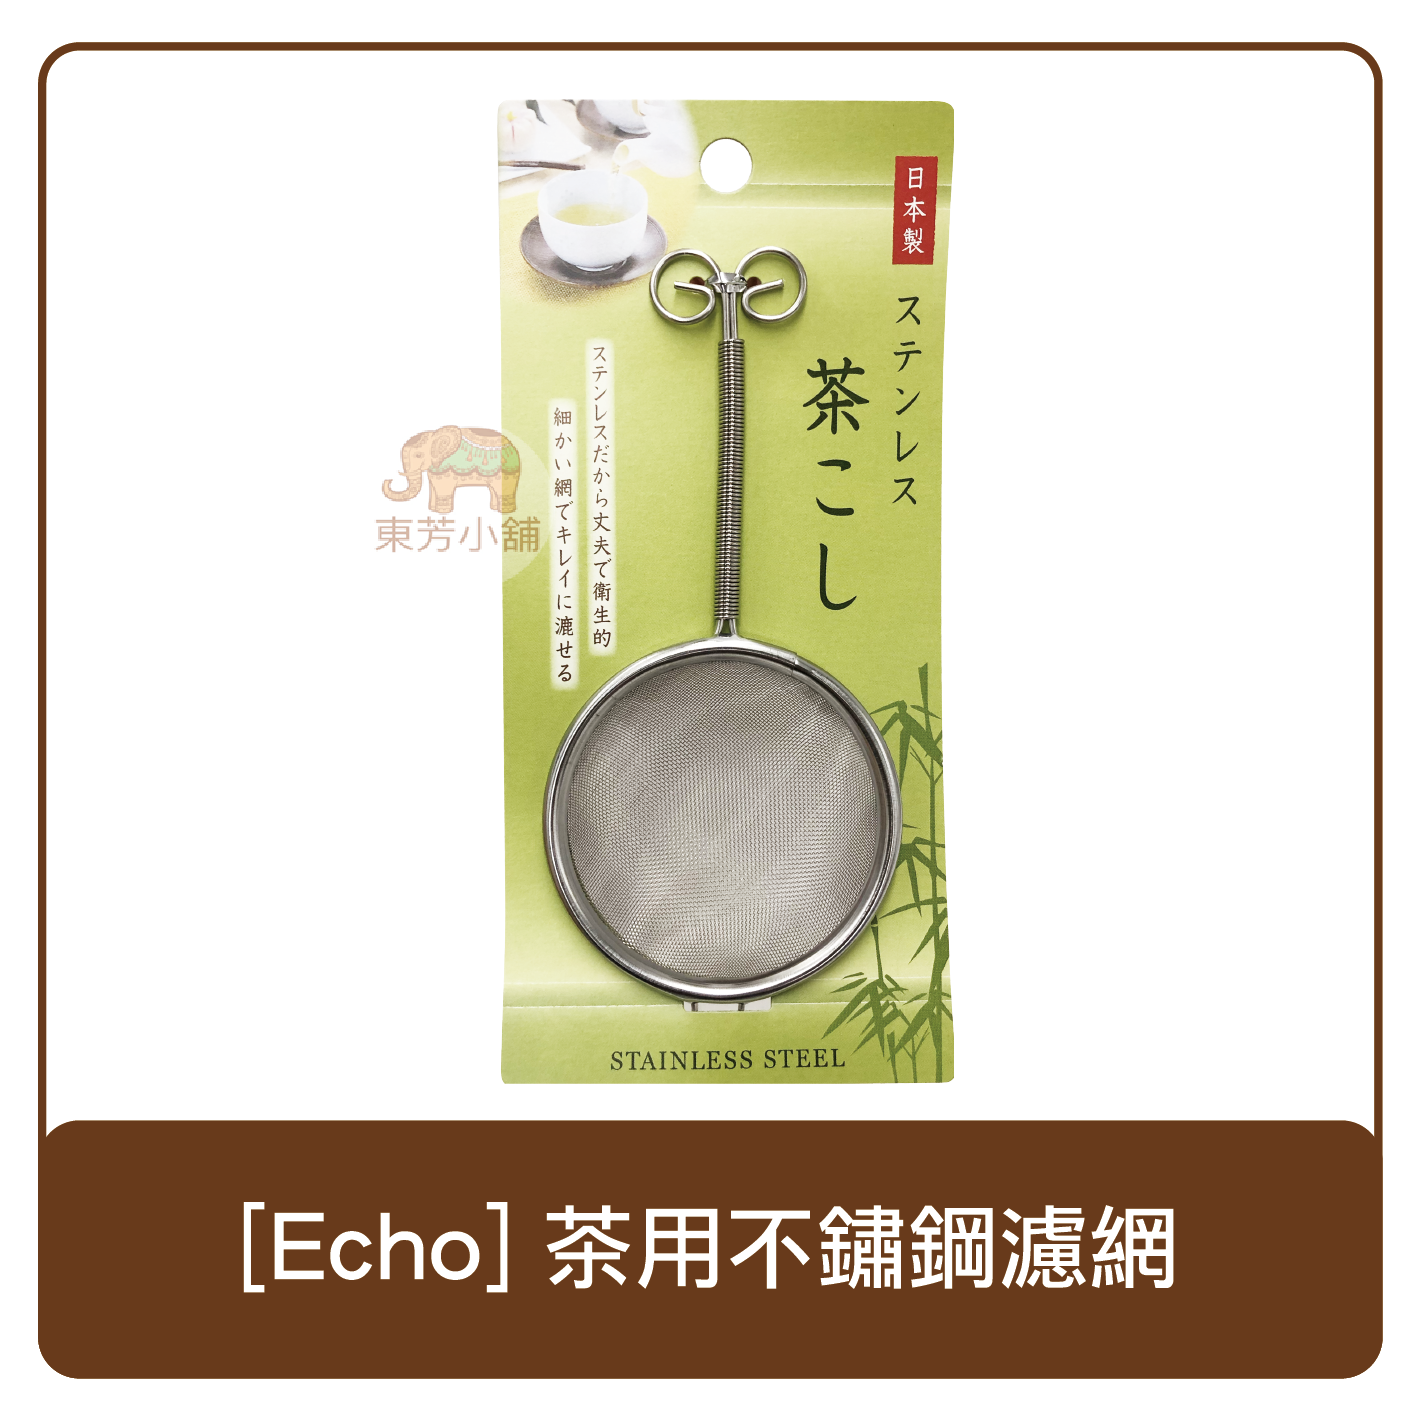 日本製 Echo 茶用不鏽鋼濾網 日本製 泡茶 濾網